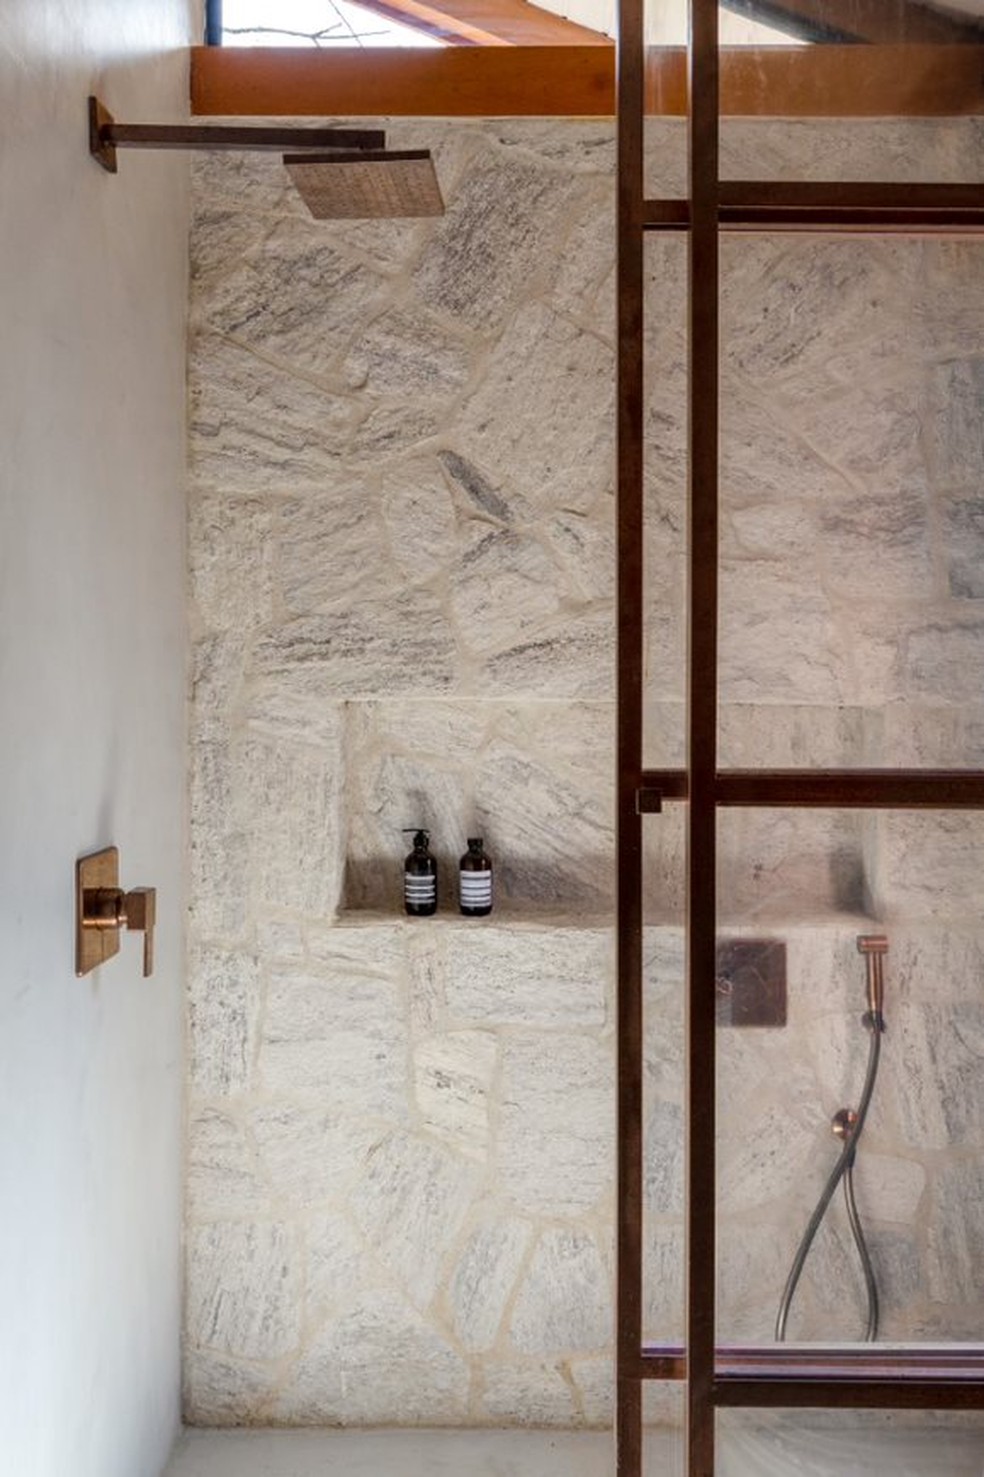 Projetado pela arquiteta Hana Lerner, o espaço traz a pedra como material principal e tem um nicho embutido na parede  — Foto: Divulgação